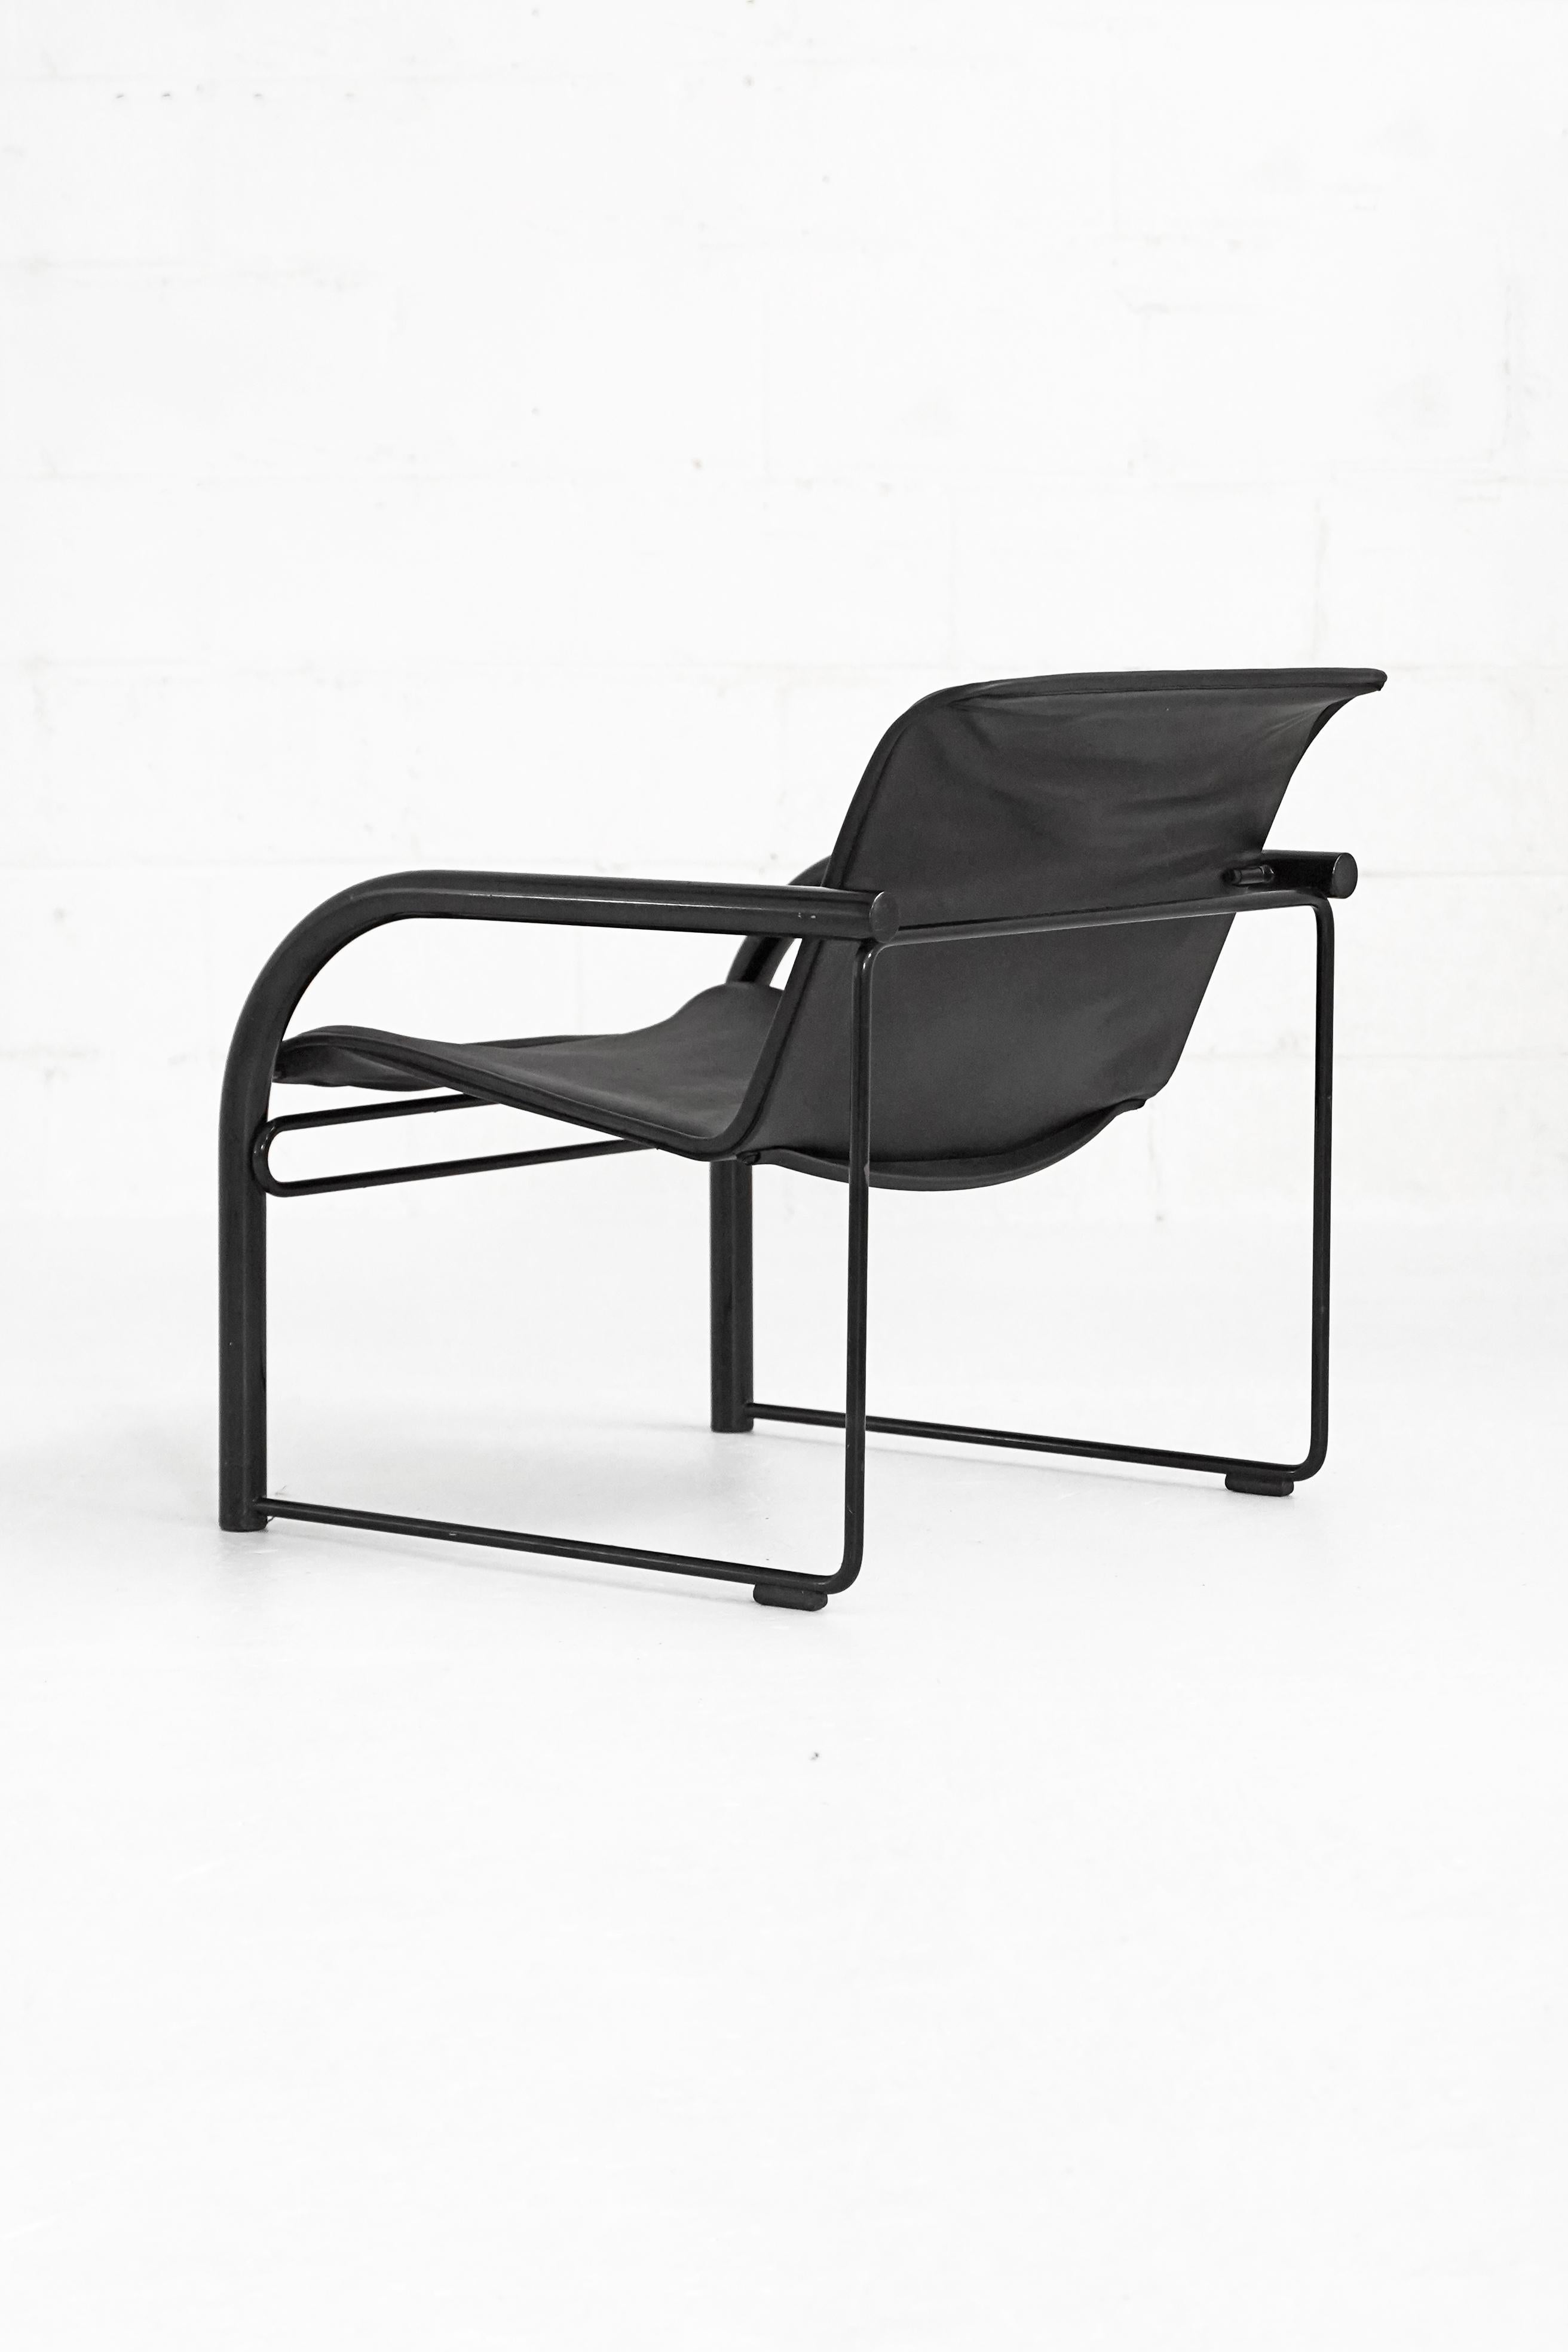 Paire de chaises longues RS48 en cuir et chrome de Richard Schultz provenant de Nienkamper. Les chaises sont vendues et tarifées individuellement. Le cadre métallique a été repeint et le cuir teinté. Les deux chaises sont en bon état général, avec